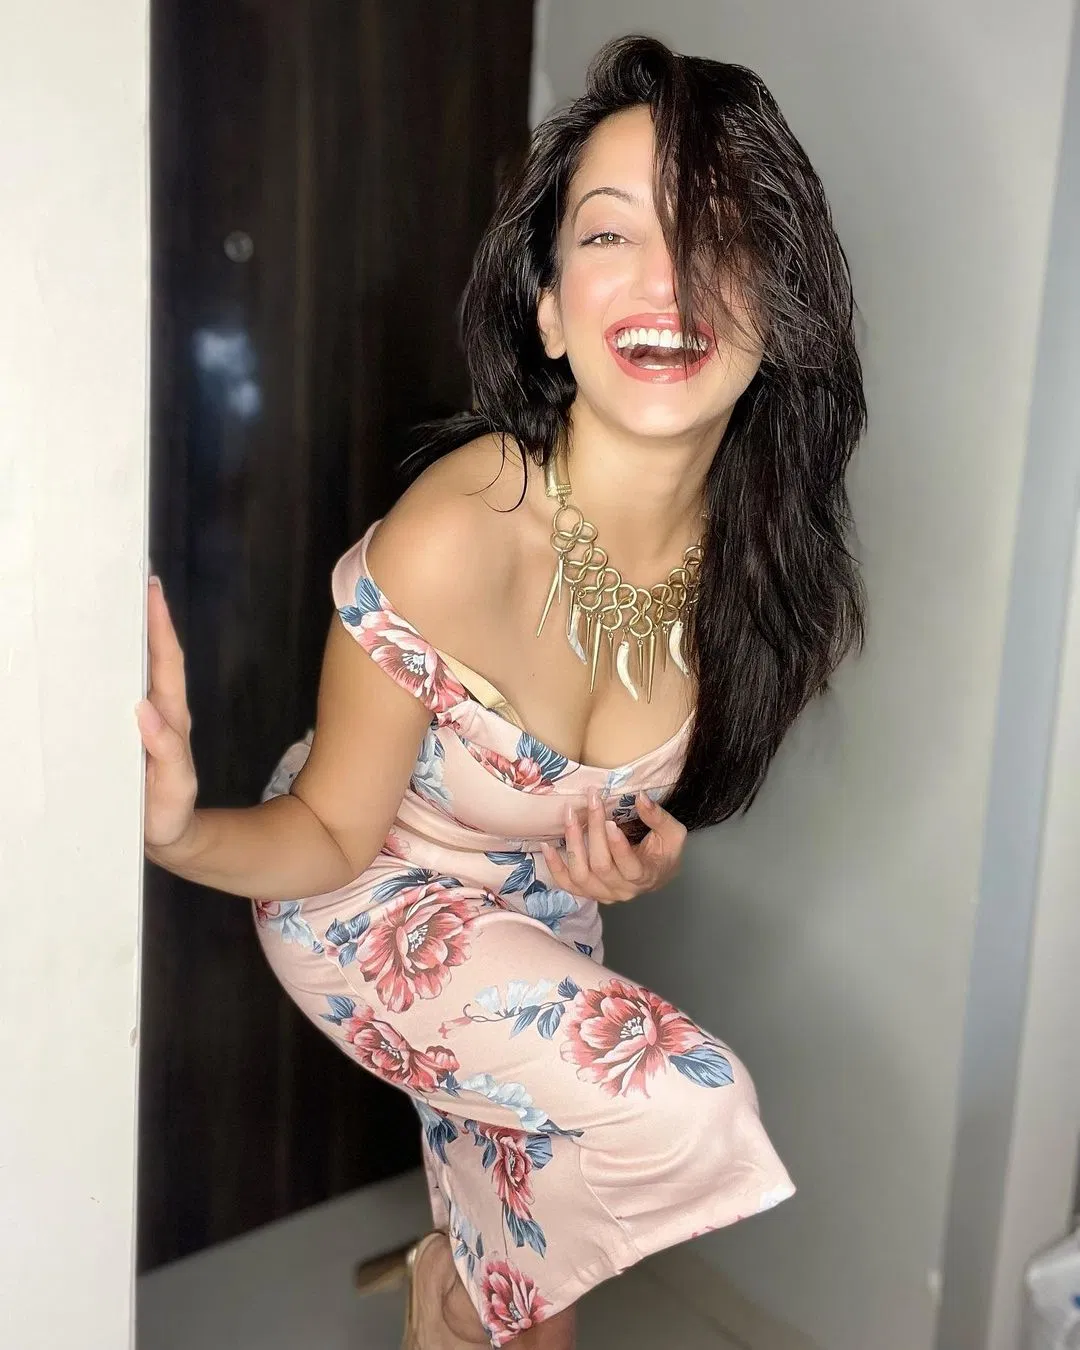 Mansi Naik Sex - Manasi Naik : à¤•à¥à¤¯à¥à¤Ÿ à¤¸à¥à¤®à¤¾à¤ˆà¤² à¤¤à¥‚ à¤˜à¤¾à¤¯à¤² à¤•à¤° à¤— à¤®à¤²à¤¾ â€“ TV9 Marathi | Marathi Actress  Manasi Naiks New Look Photos Fans Are Shocked